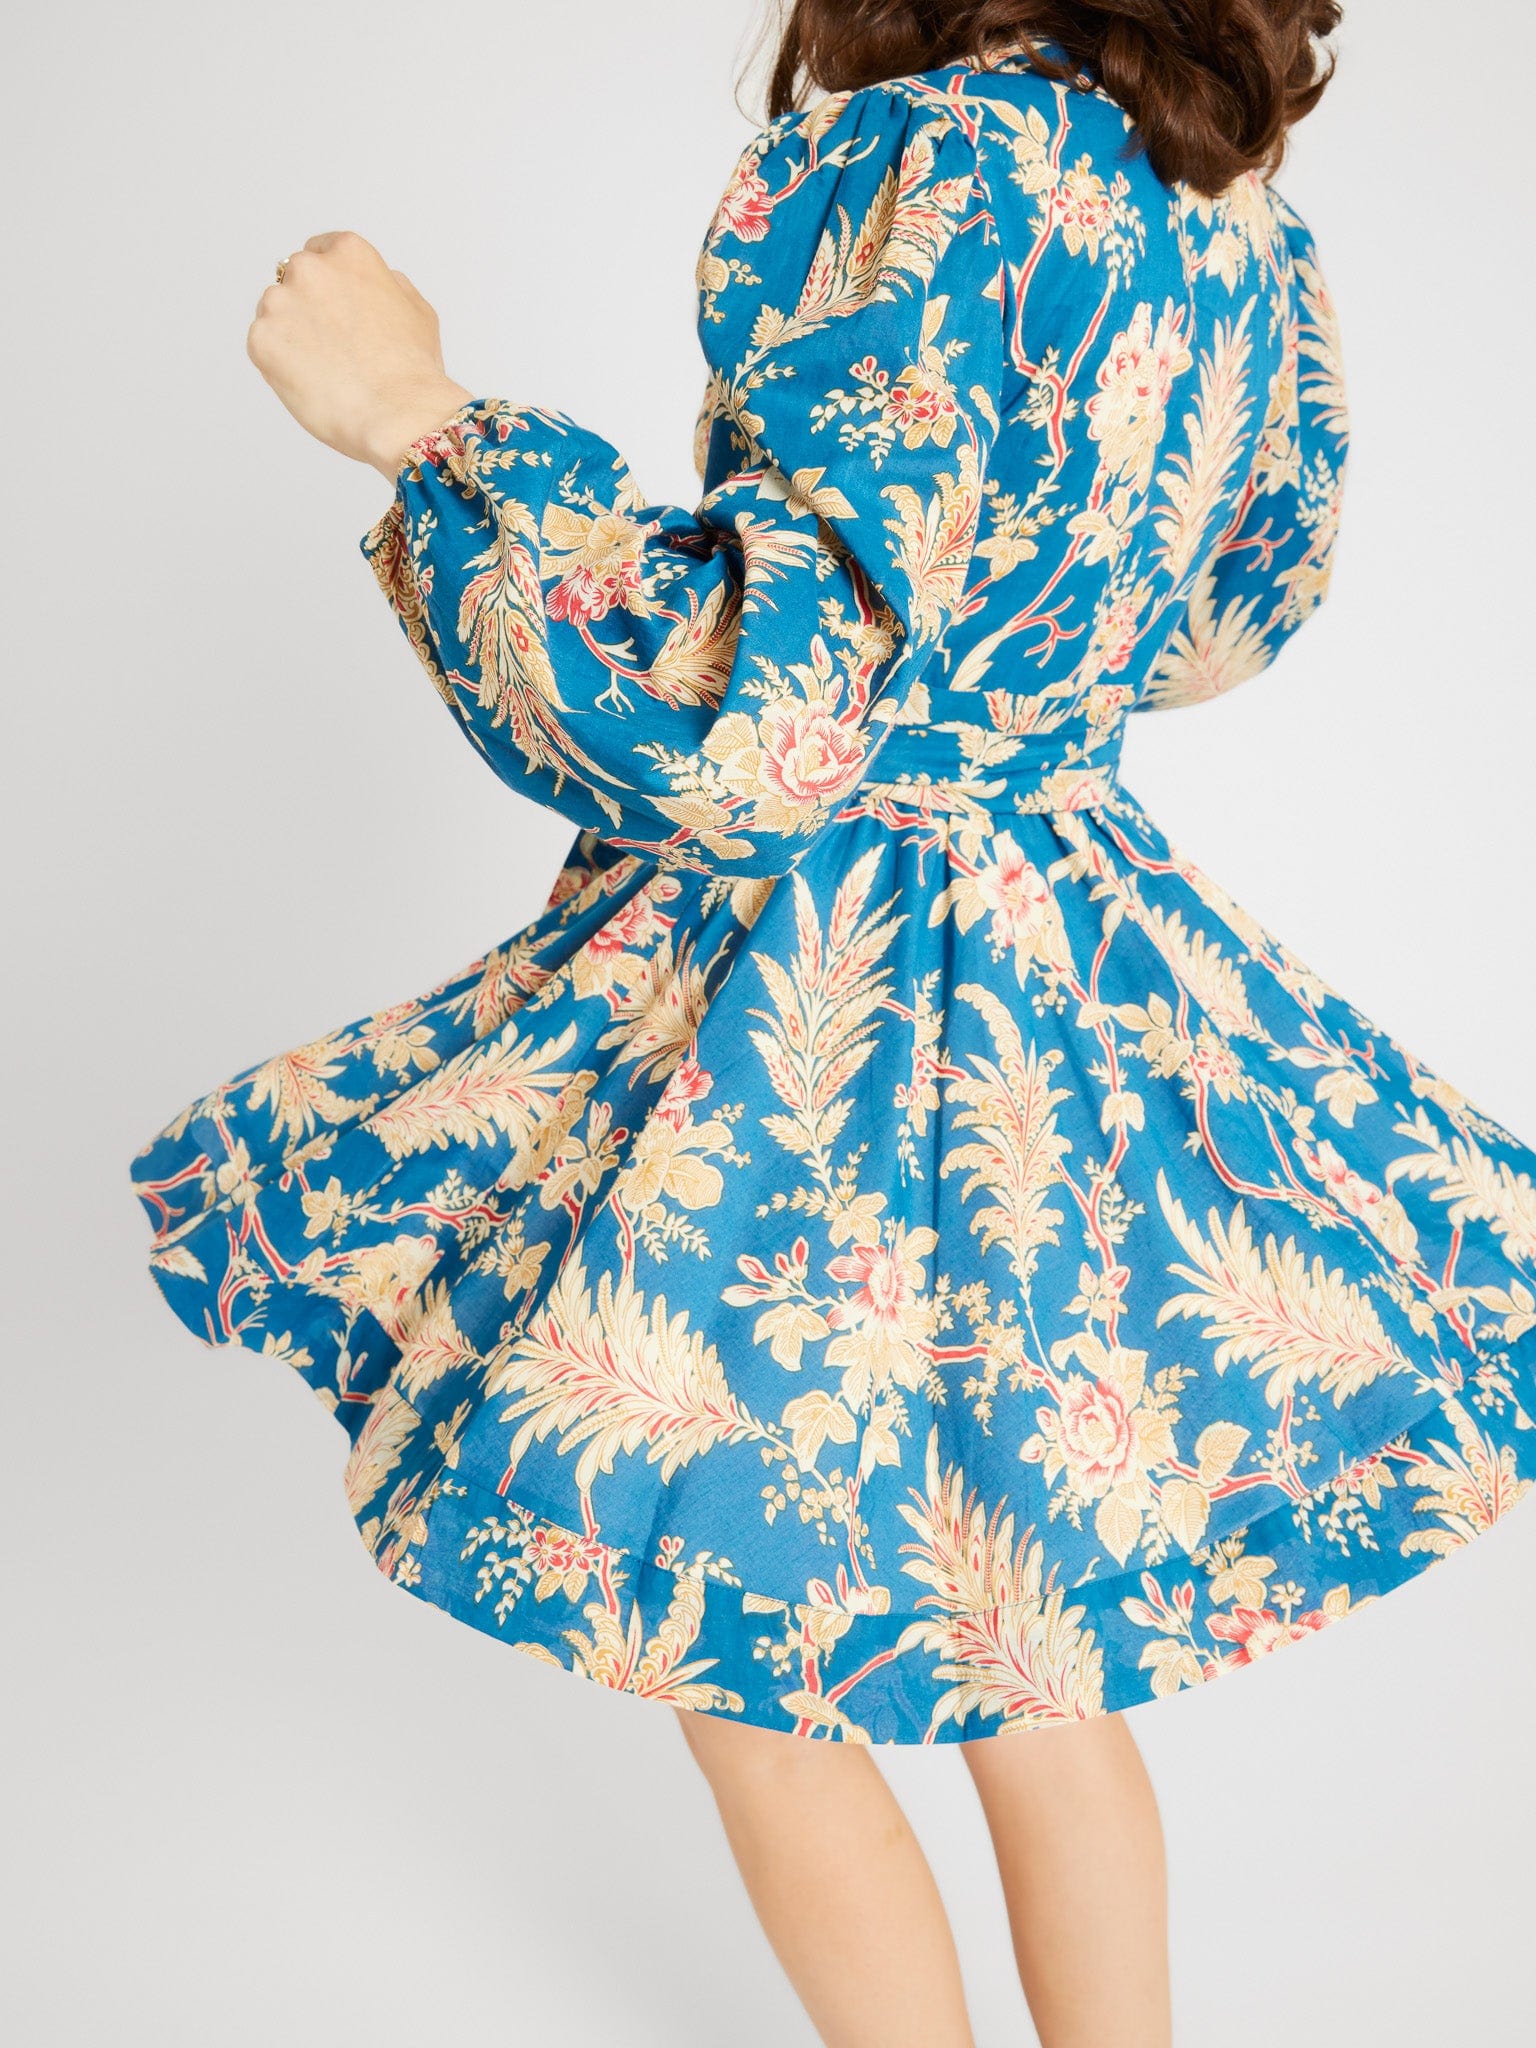 MILLE Clothing Nan Wrap Dress in Firenze